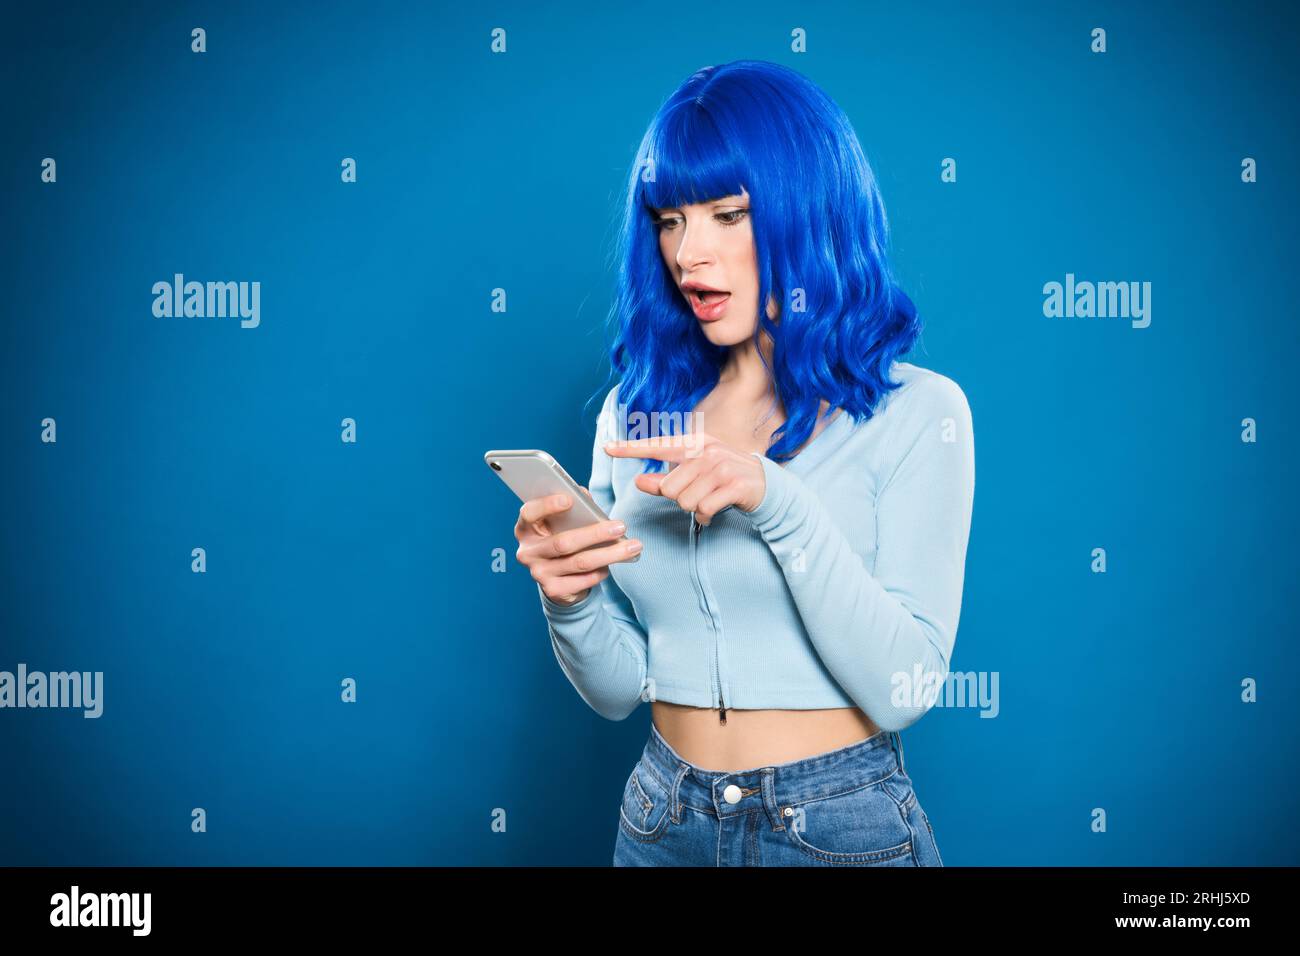 Staunende junge Frau mit blauem Haar, die auf den Bildschirm des Mobiltelefons schaut und mit dem Finger vor einem leuchtend beleuchteten Hintergrund steht Stockfoto